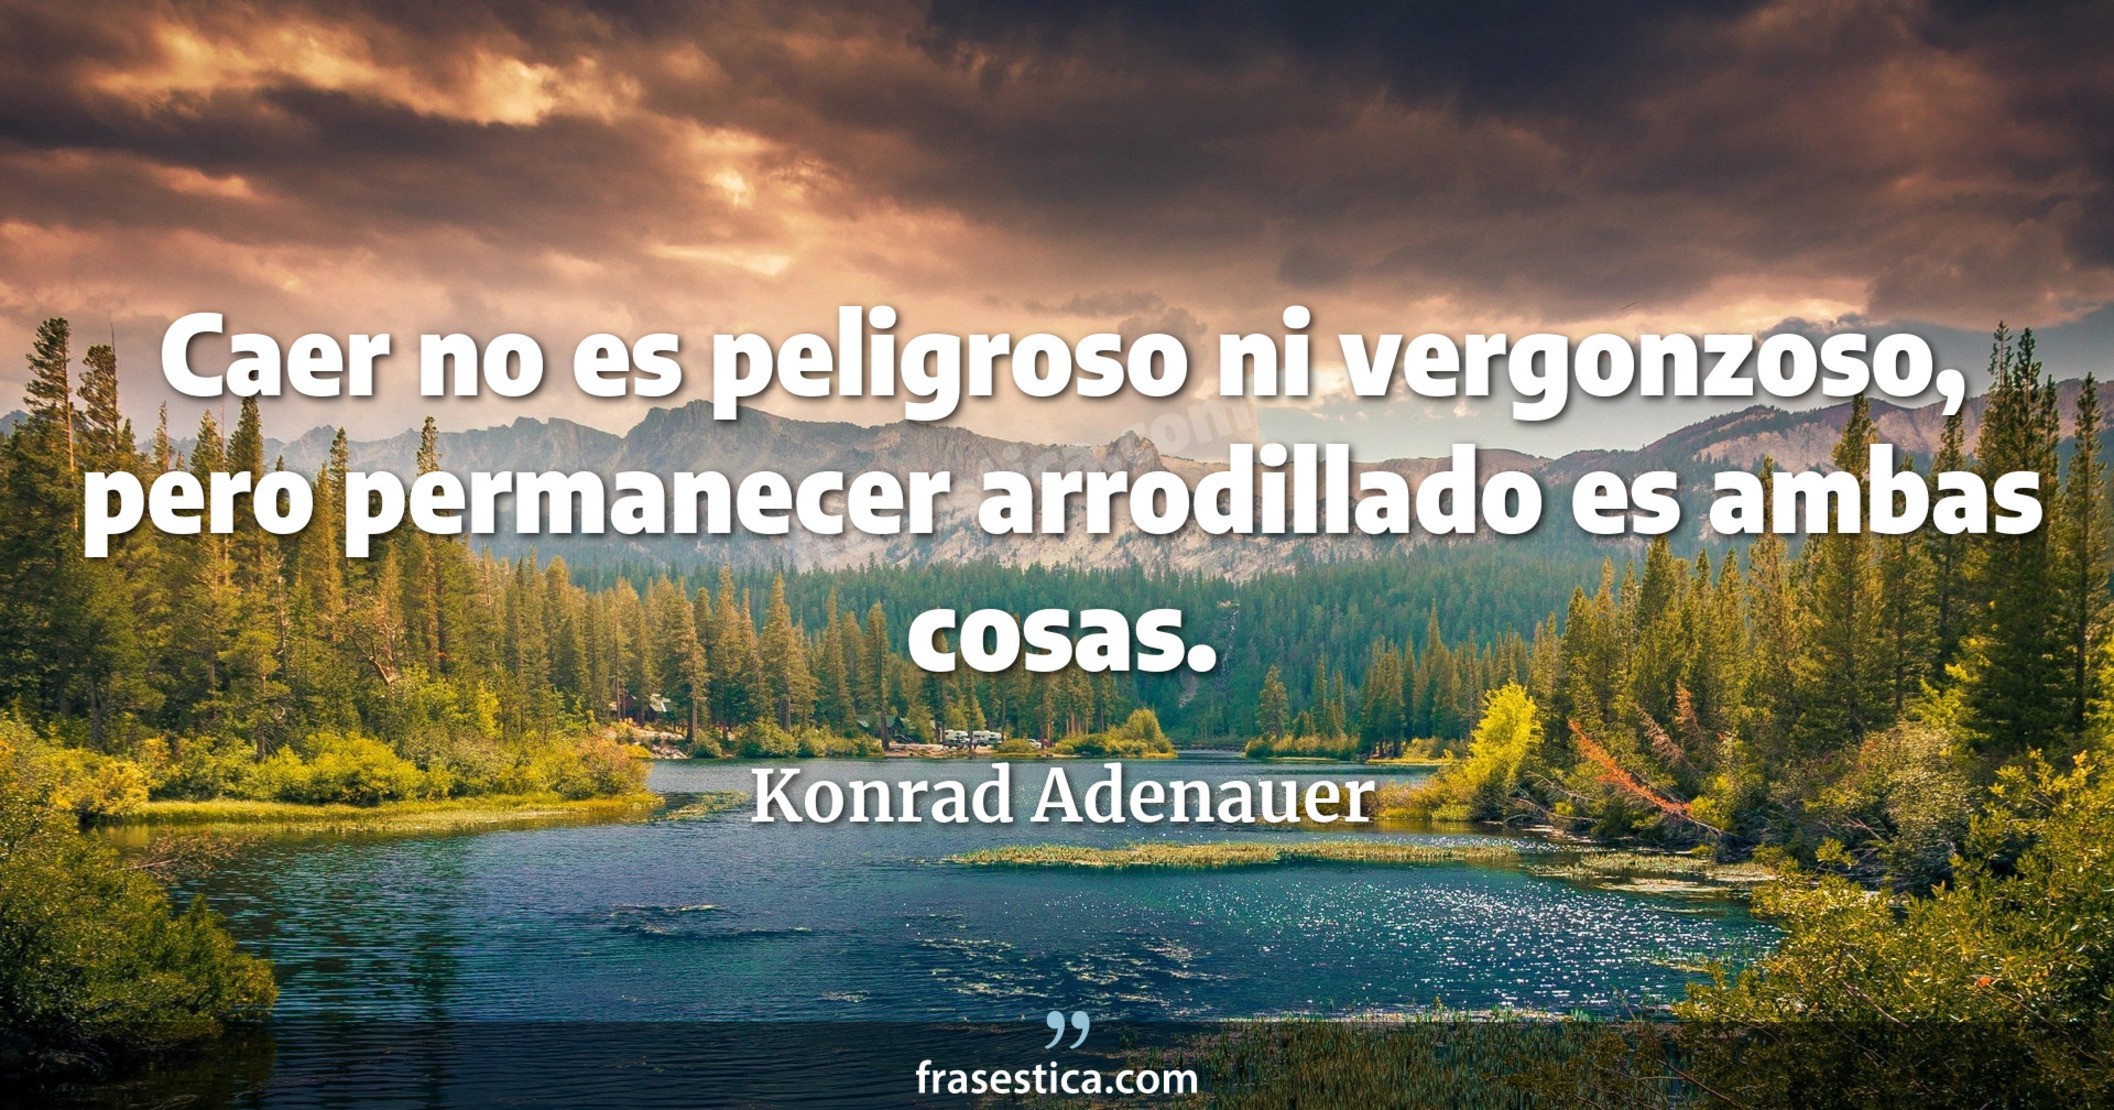 Caer no es peligroso ni vergonzoso, pero permanecer arrodillado es ambas cosas. - Konrad Adenauer